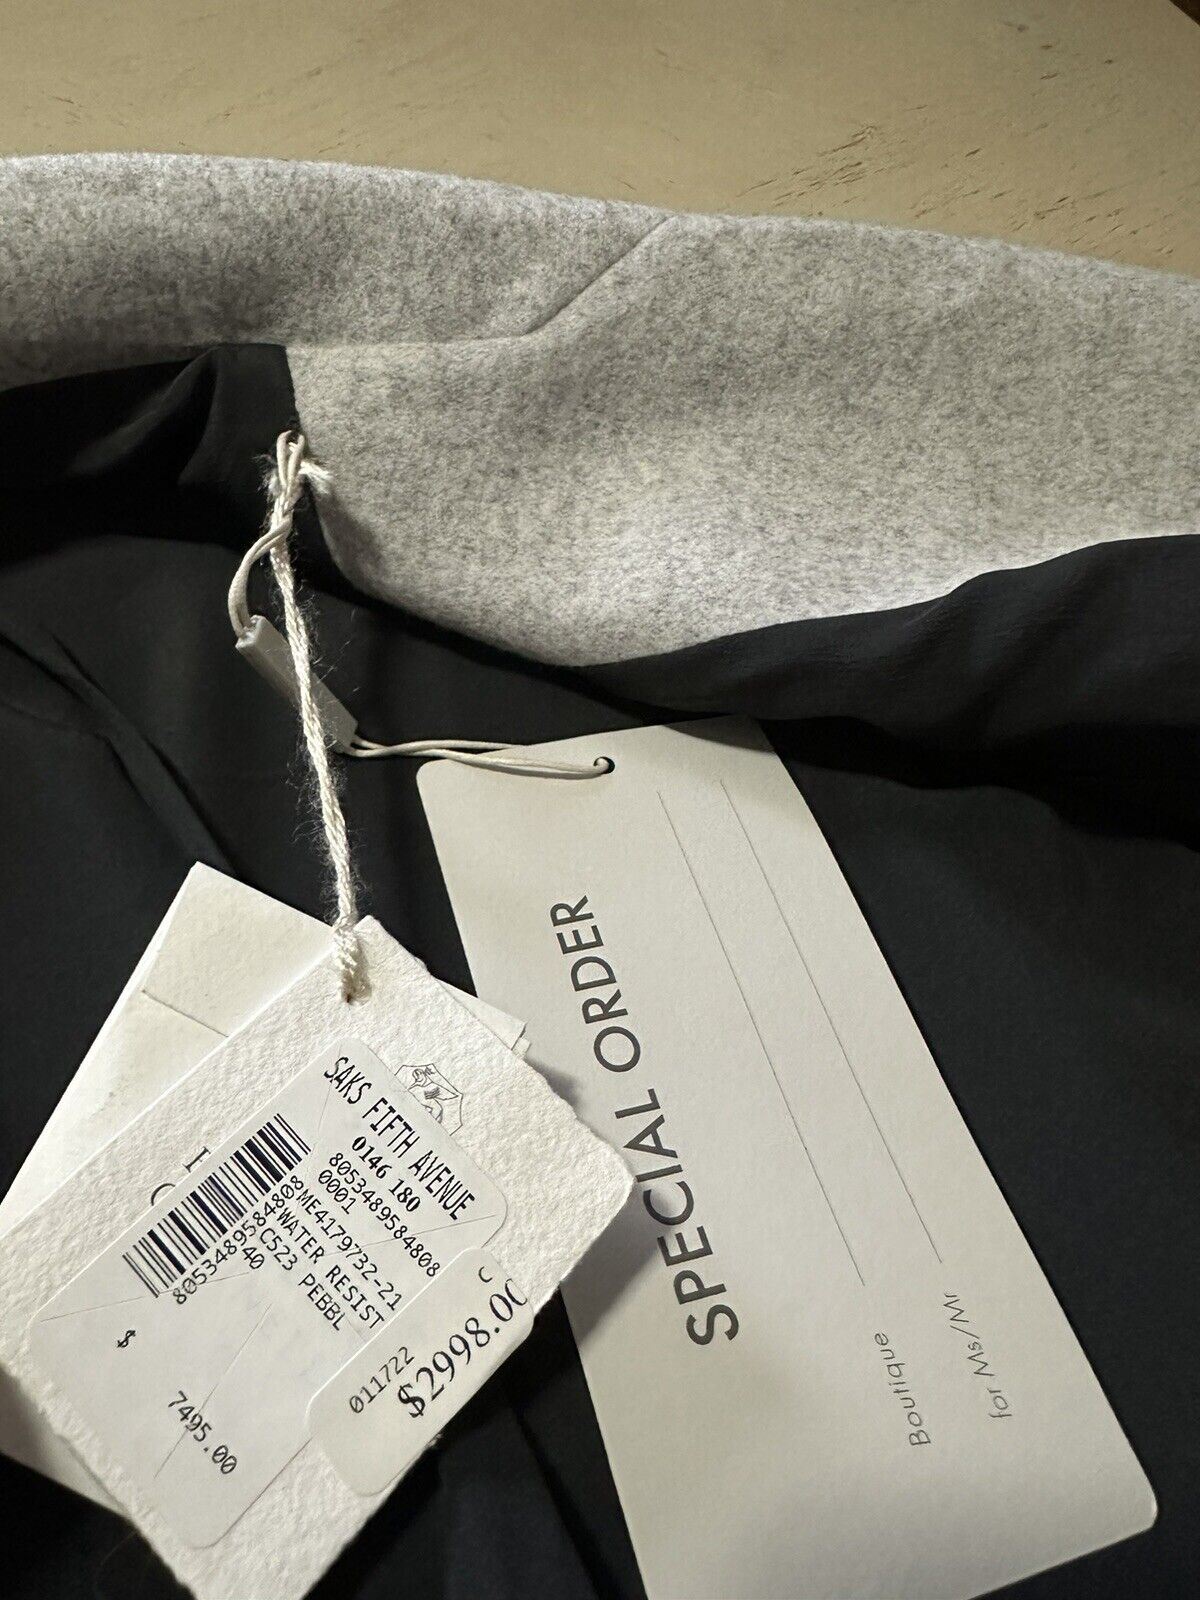 Новое водостойкое шерстяное пальто Brunello Cucinelli за 7495 долларов США, цвет Pebbl Grey 40/4